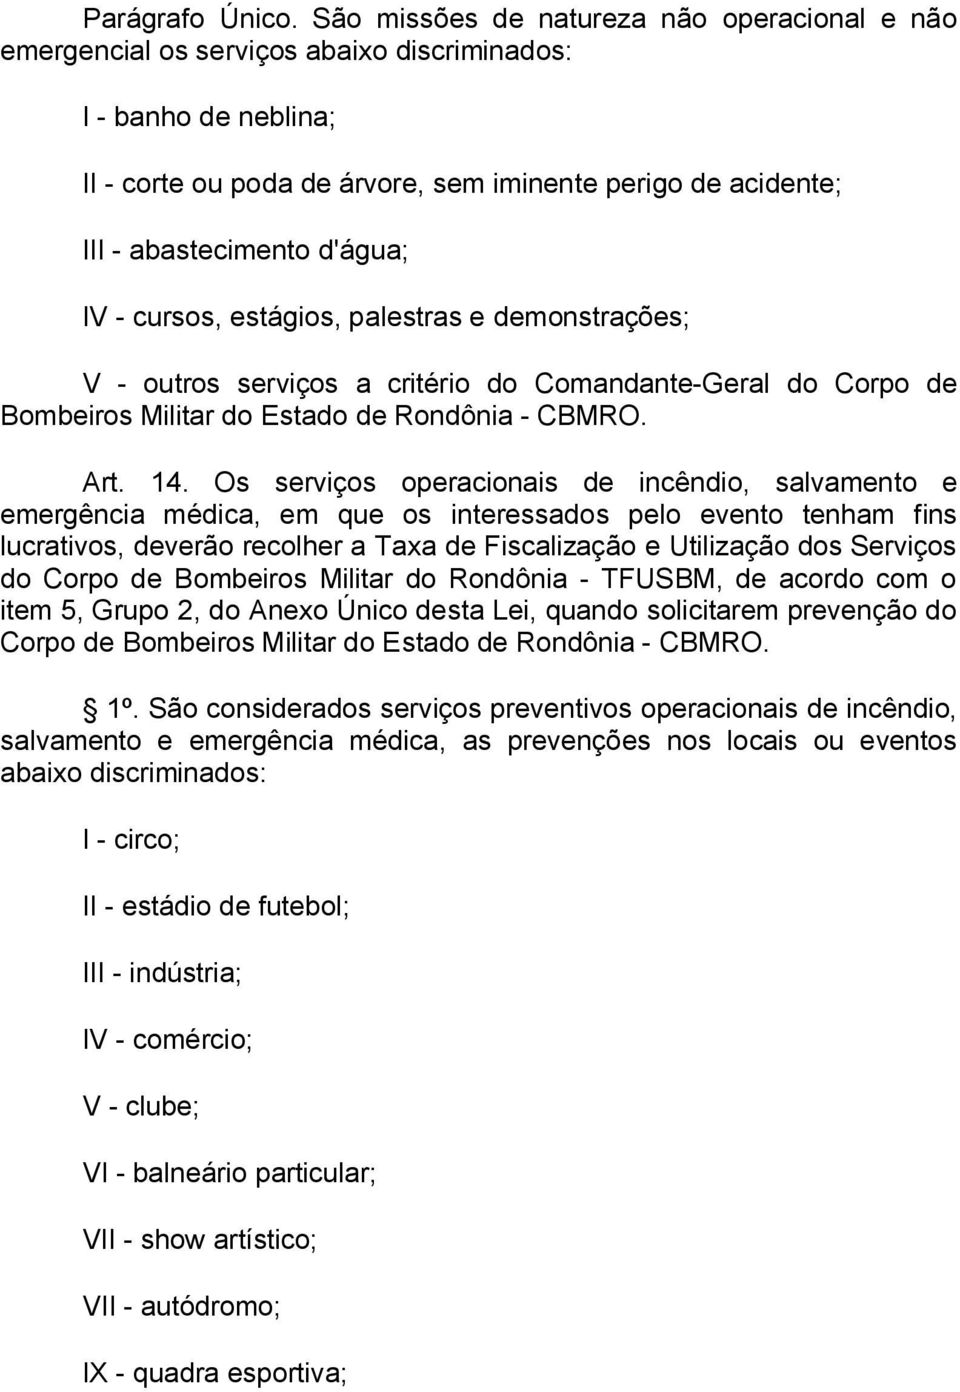 d'água; IV - cursos, estágios, palestras e demonstrações; V - outros serviços a critério do Comandante-Geral do Corpo de Bombeiros Militar do Estado de Rondônia - CBMRO. Art. 14.